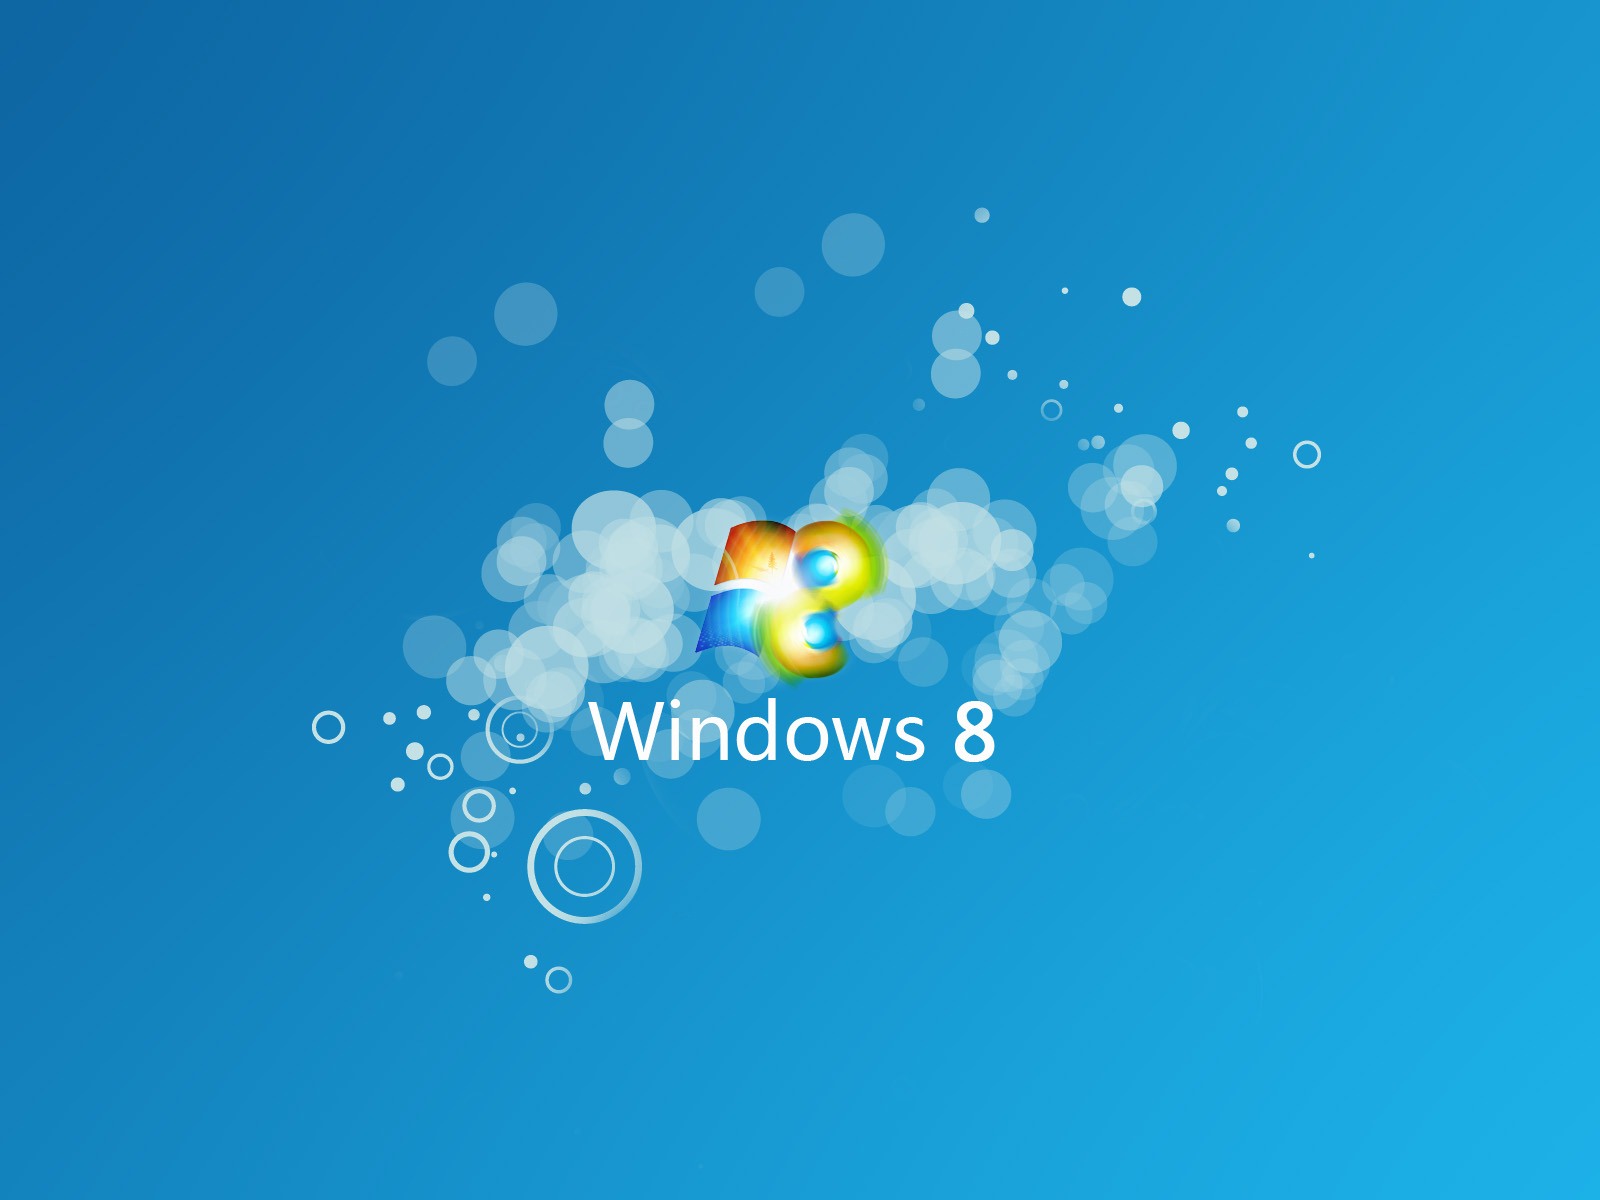 Windows 8 theme wallpaper (1) #9 - 1600x1200